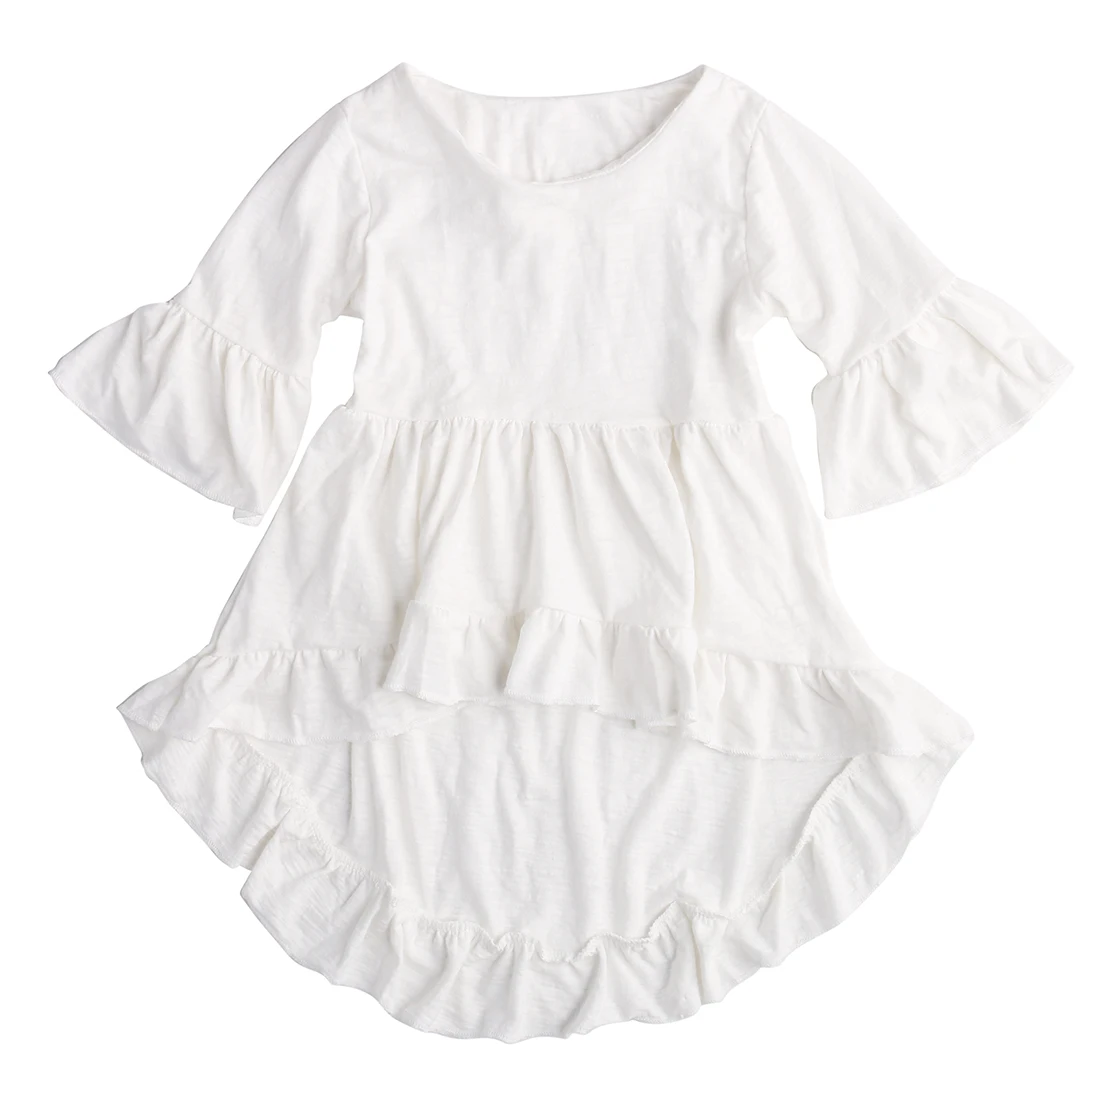 Новое летнее милое асимметричное платье для маленьких девочек вечерние платья с оборками и расклешенными рукавами стильные белые платья принцессы для девочек